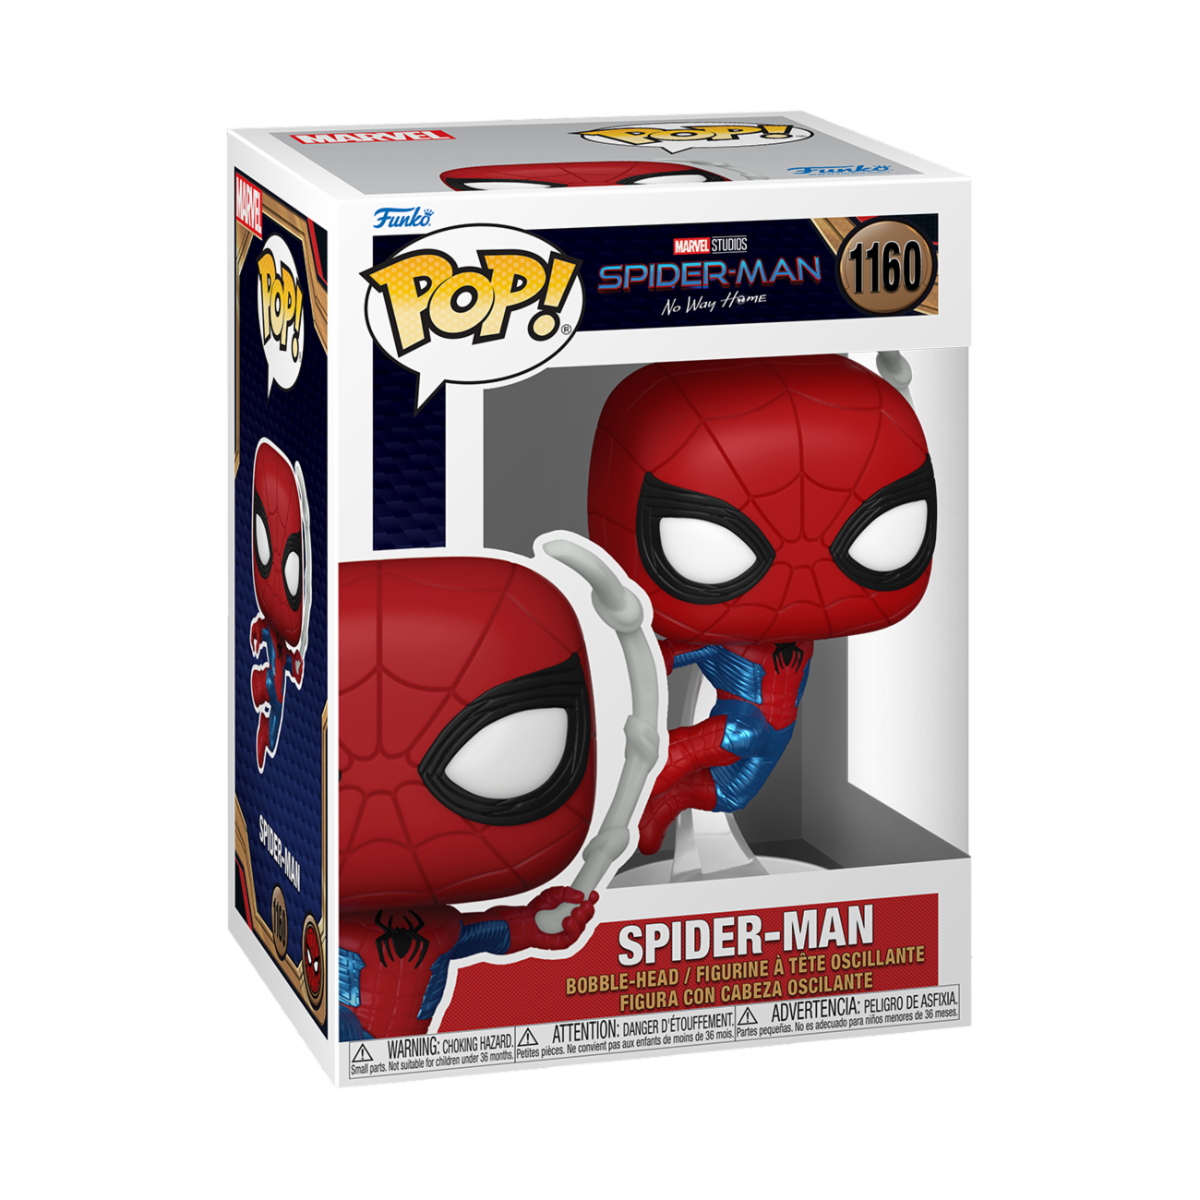 Spider Man No Way Home - Spider Man Final Suit (1160)